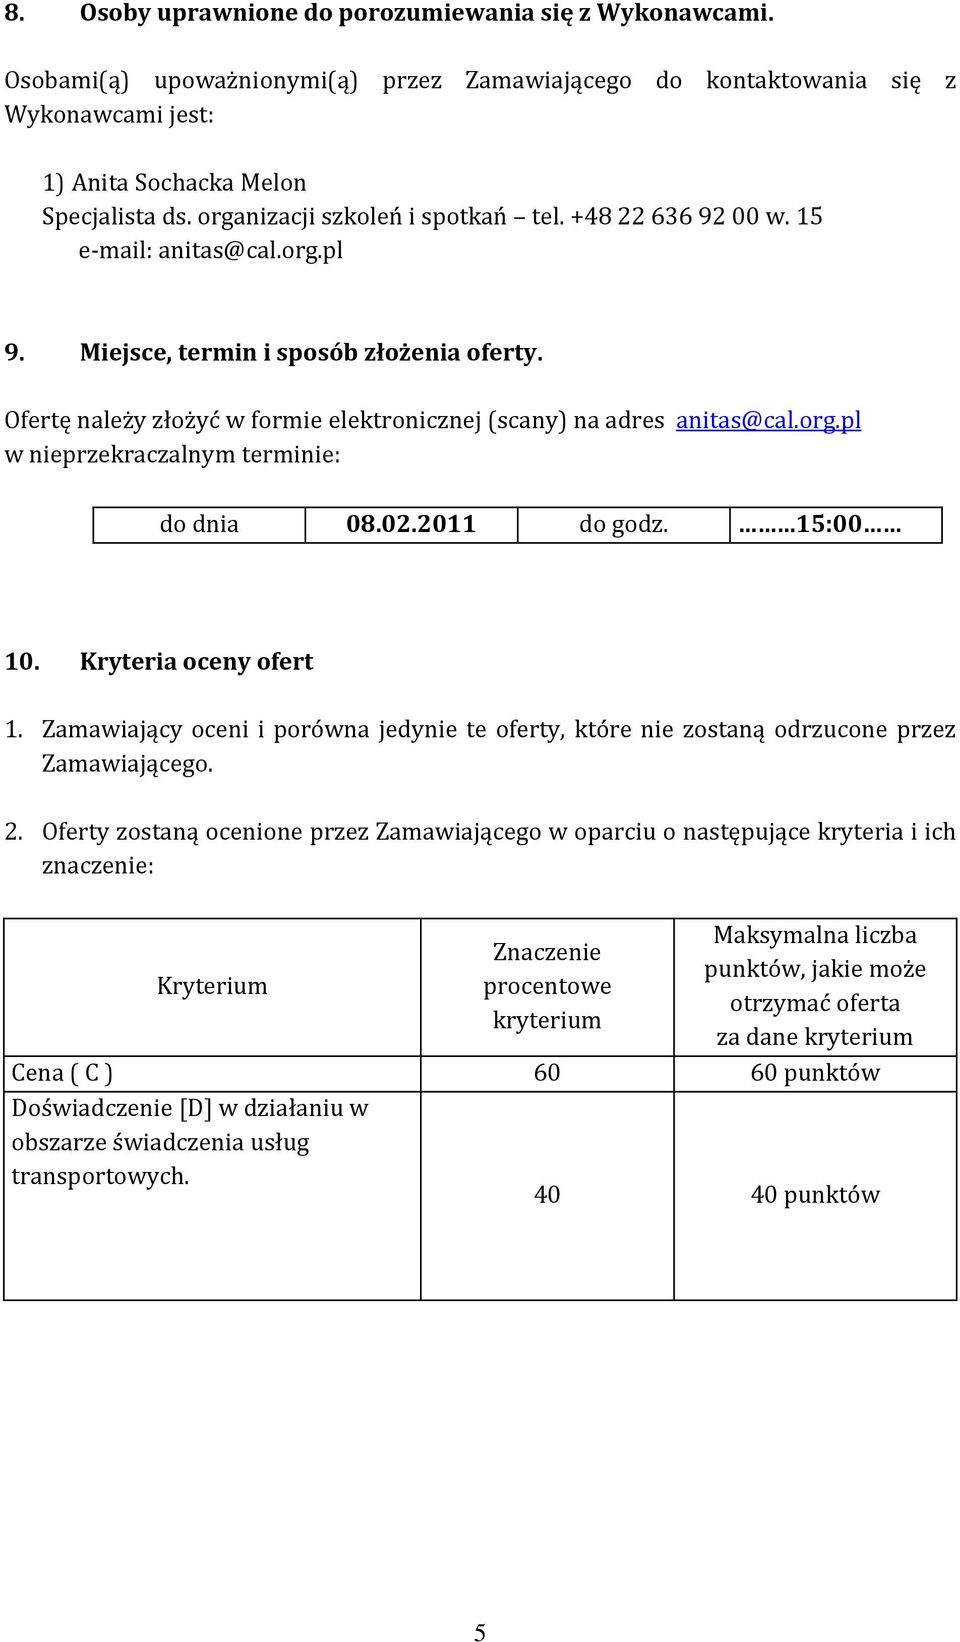 Ofertę należy złożyć w formie elektronicznej (scany) na adres anitas@cal.org.pl w nieprzekraczalnym terminie: do dnia 08.02.2011 do godz. 15:00 10. Kryteria oceny ofert 1.